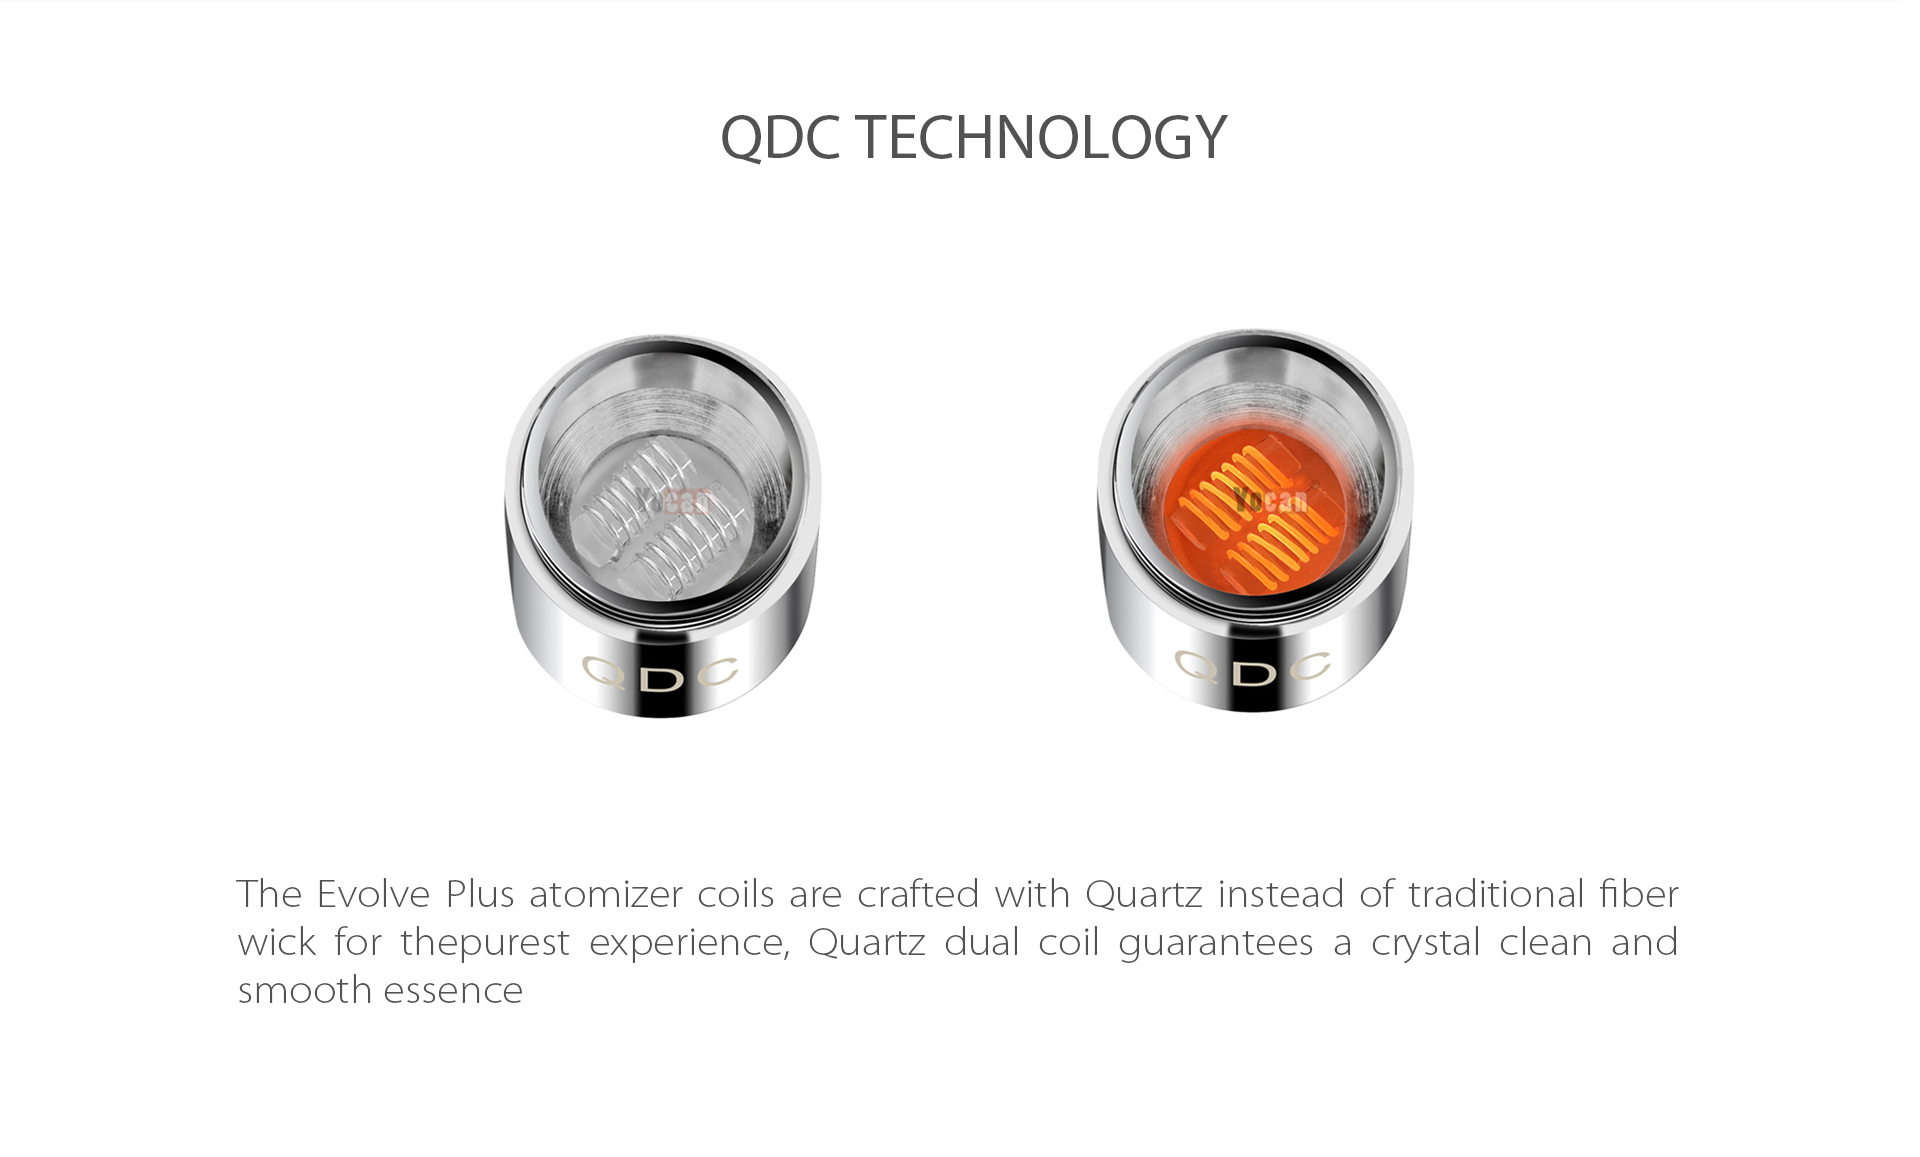 Yocan Evolve-Plus vaporizer pen 2020 version features Quartz Dual Coil (QDC) Technology.